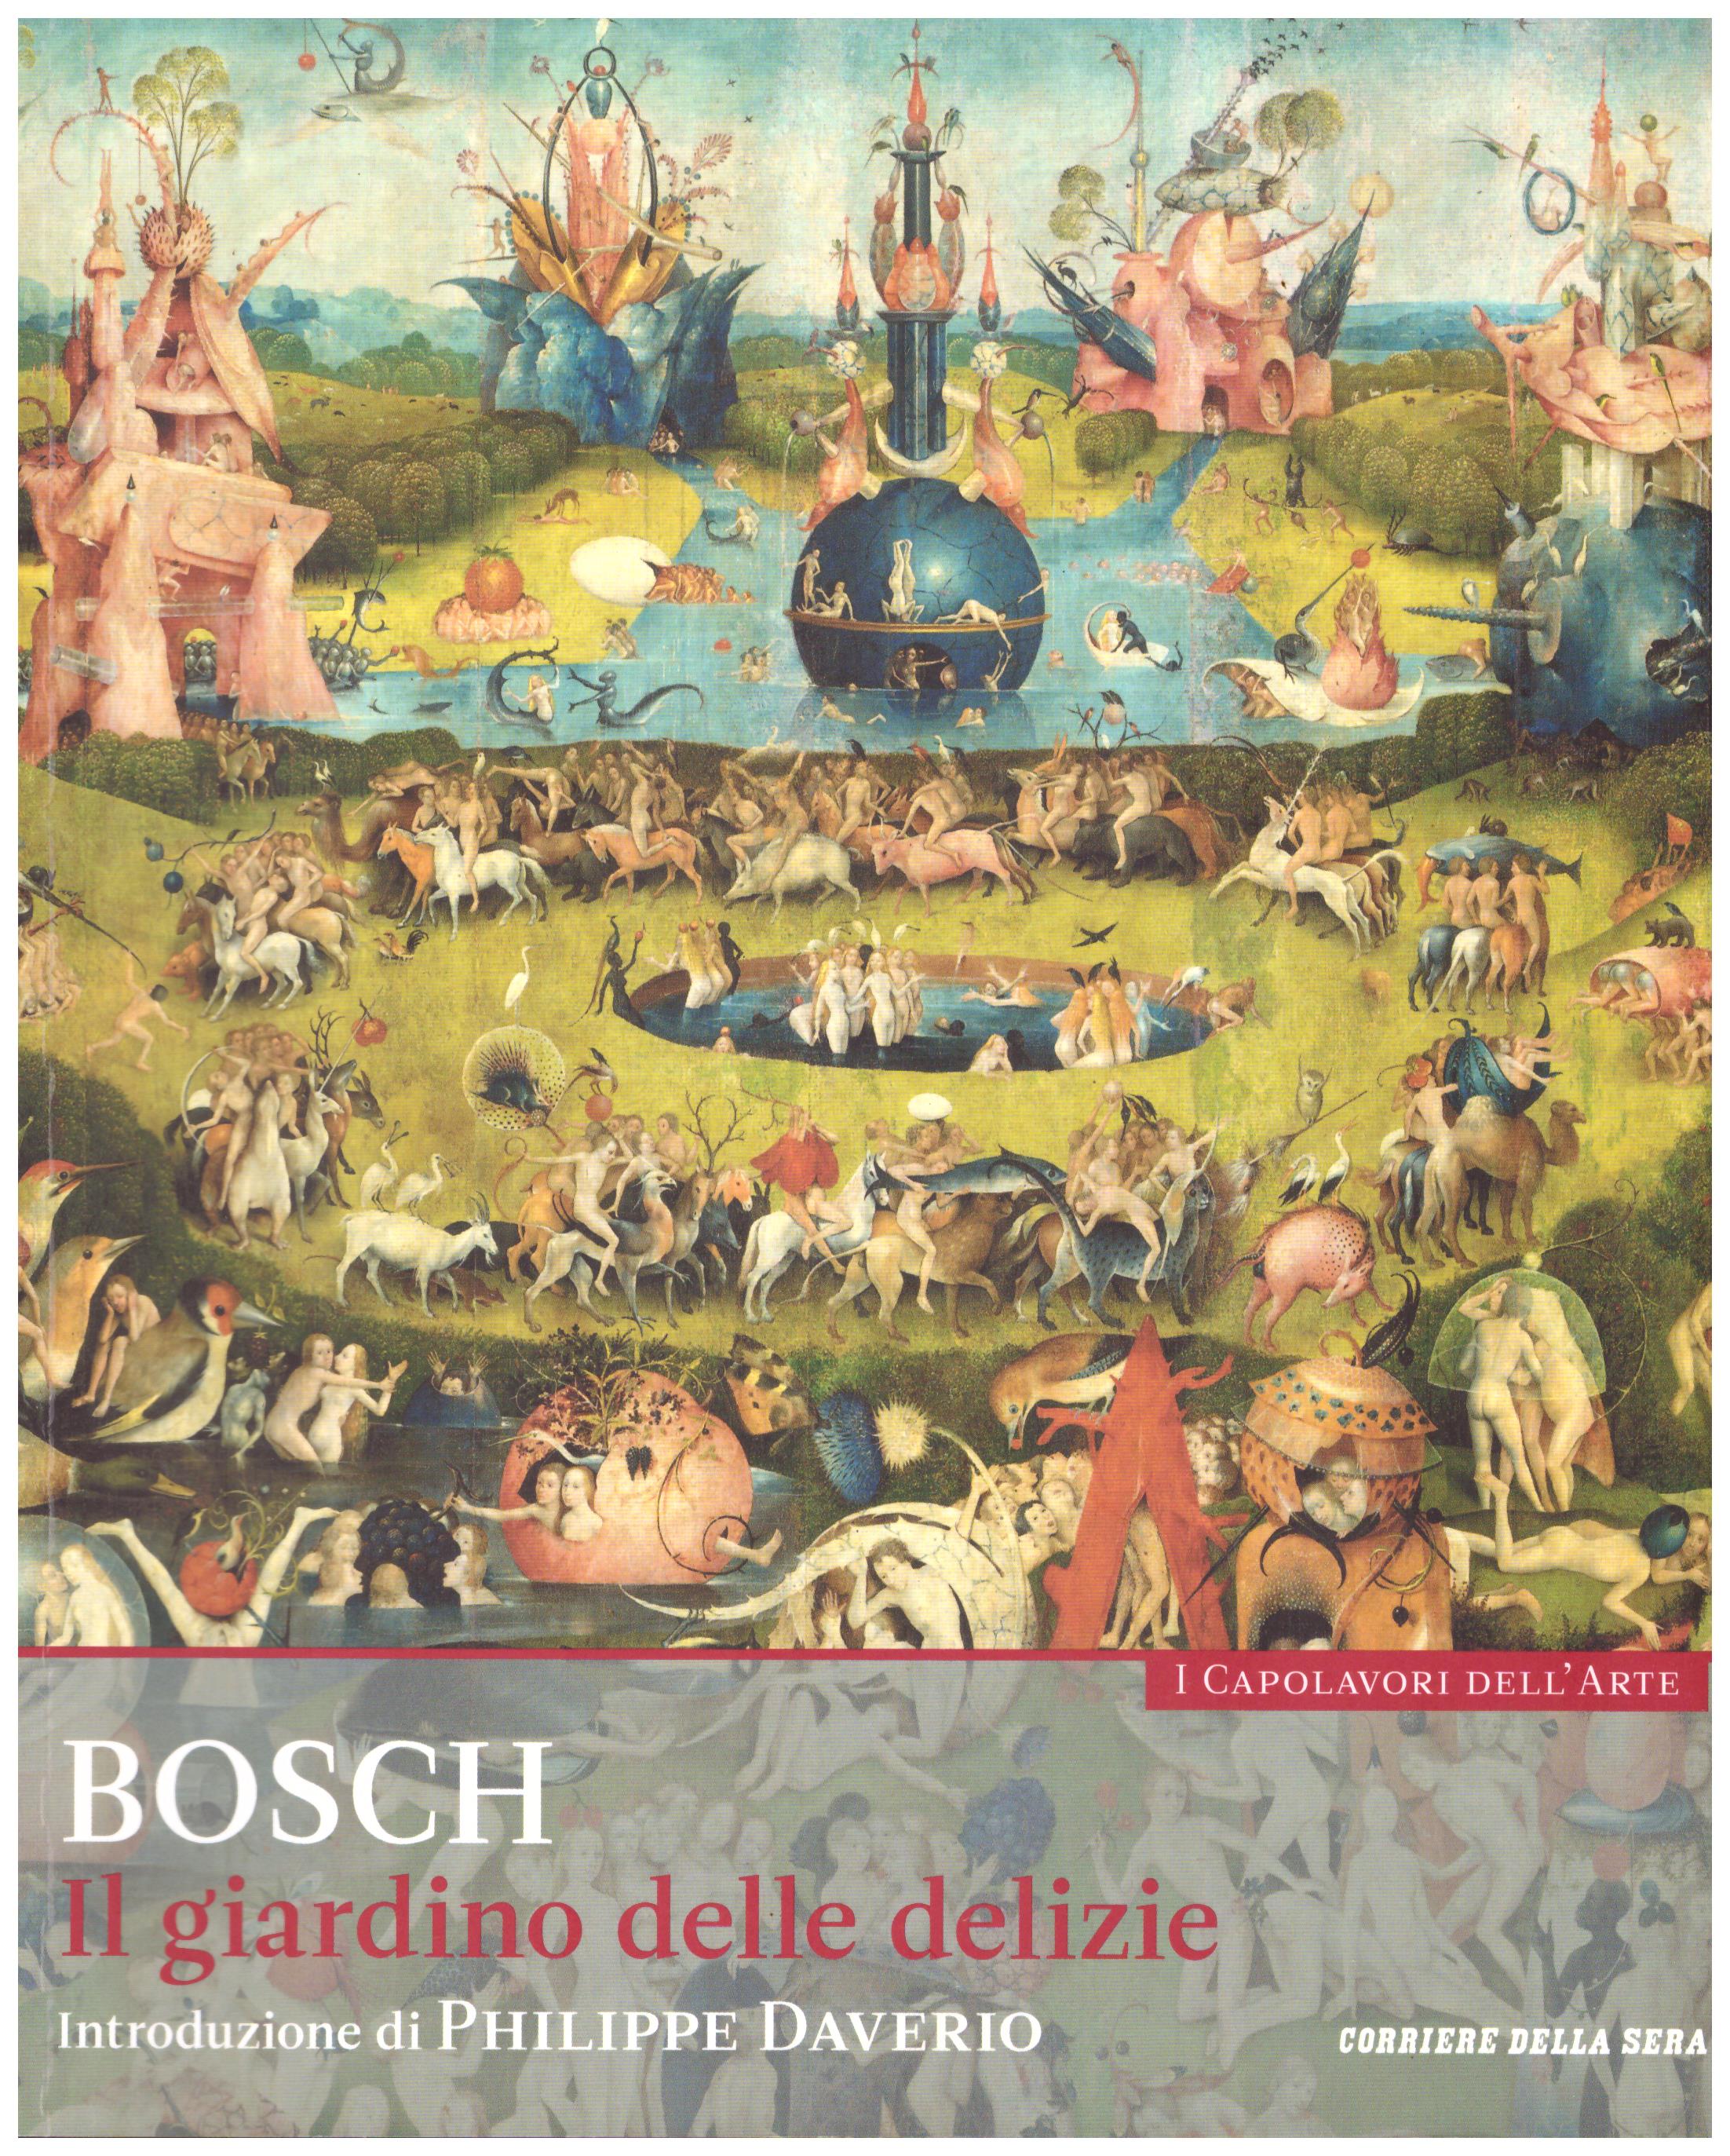 Titolo: I capolavori dell'arte, Bosch n.17  Autore : AA.VV.   Editore: education,it/corriere della sera, 2015